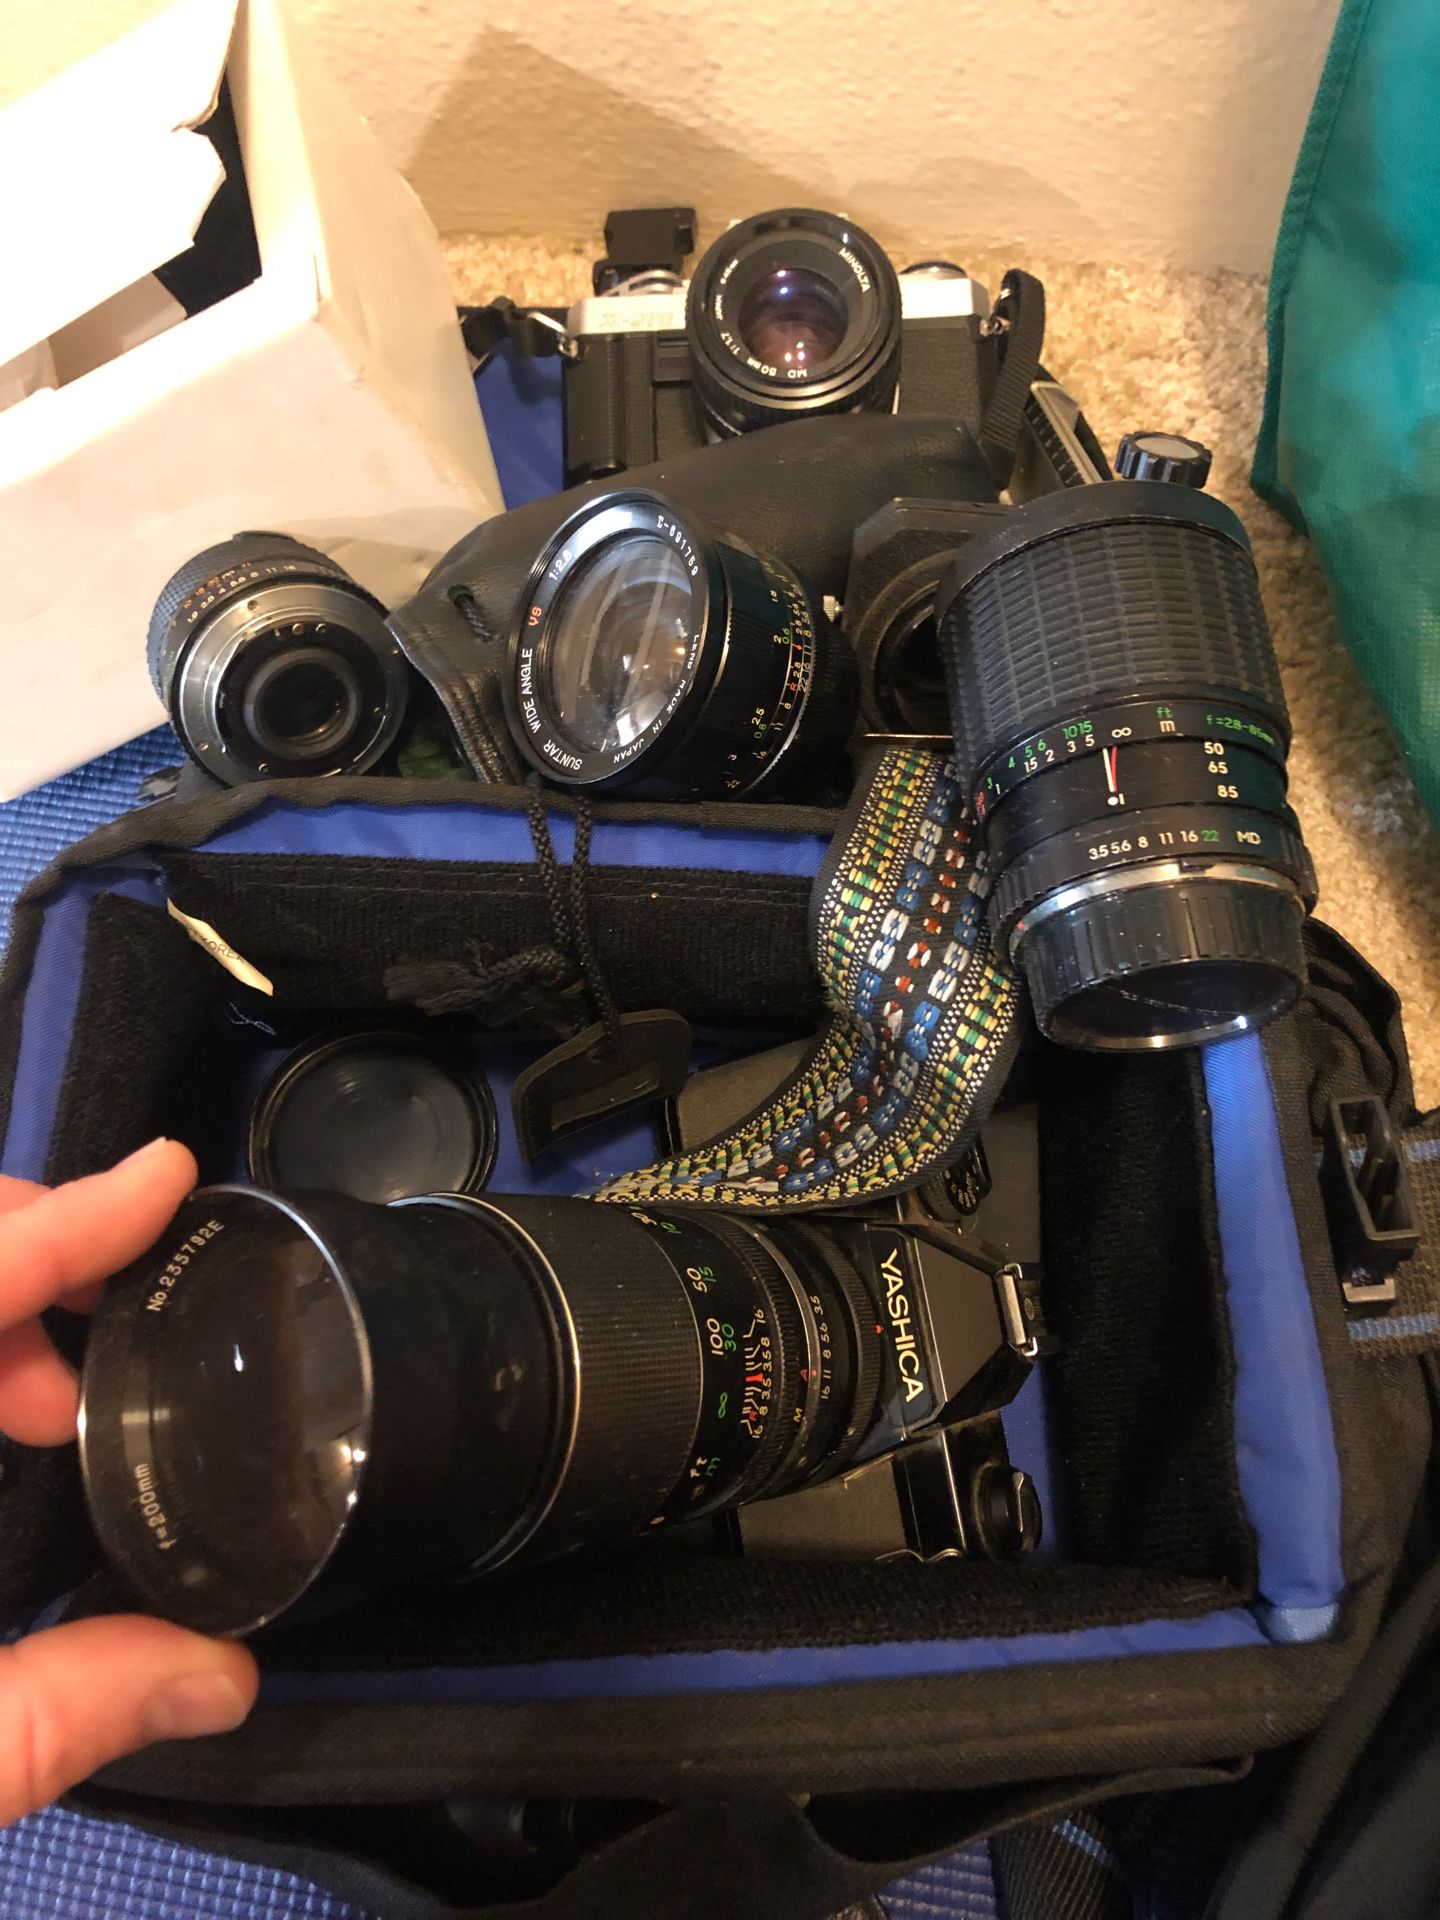 Camera lenses and 3 film cameras